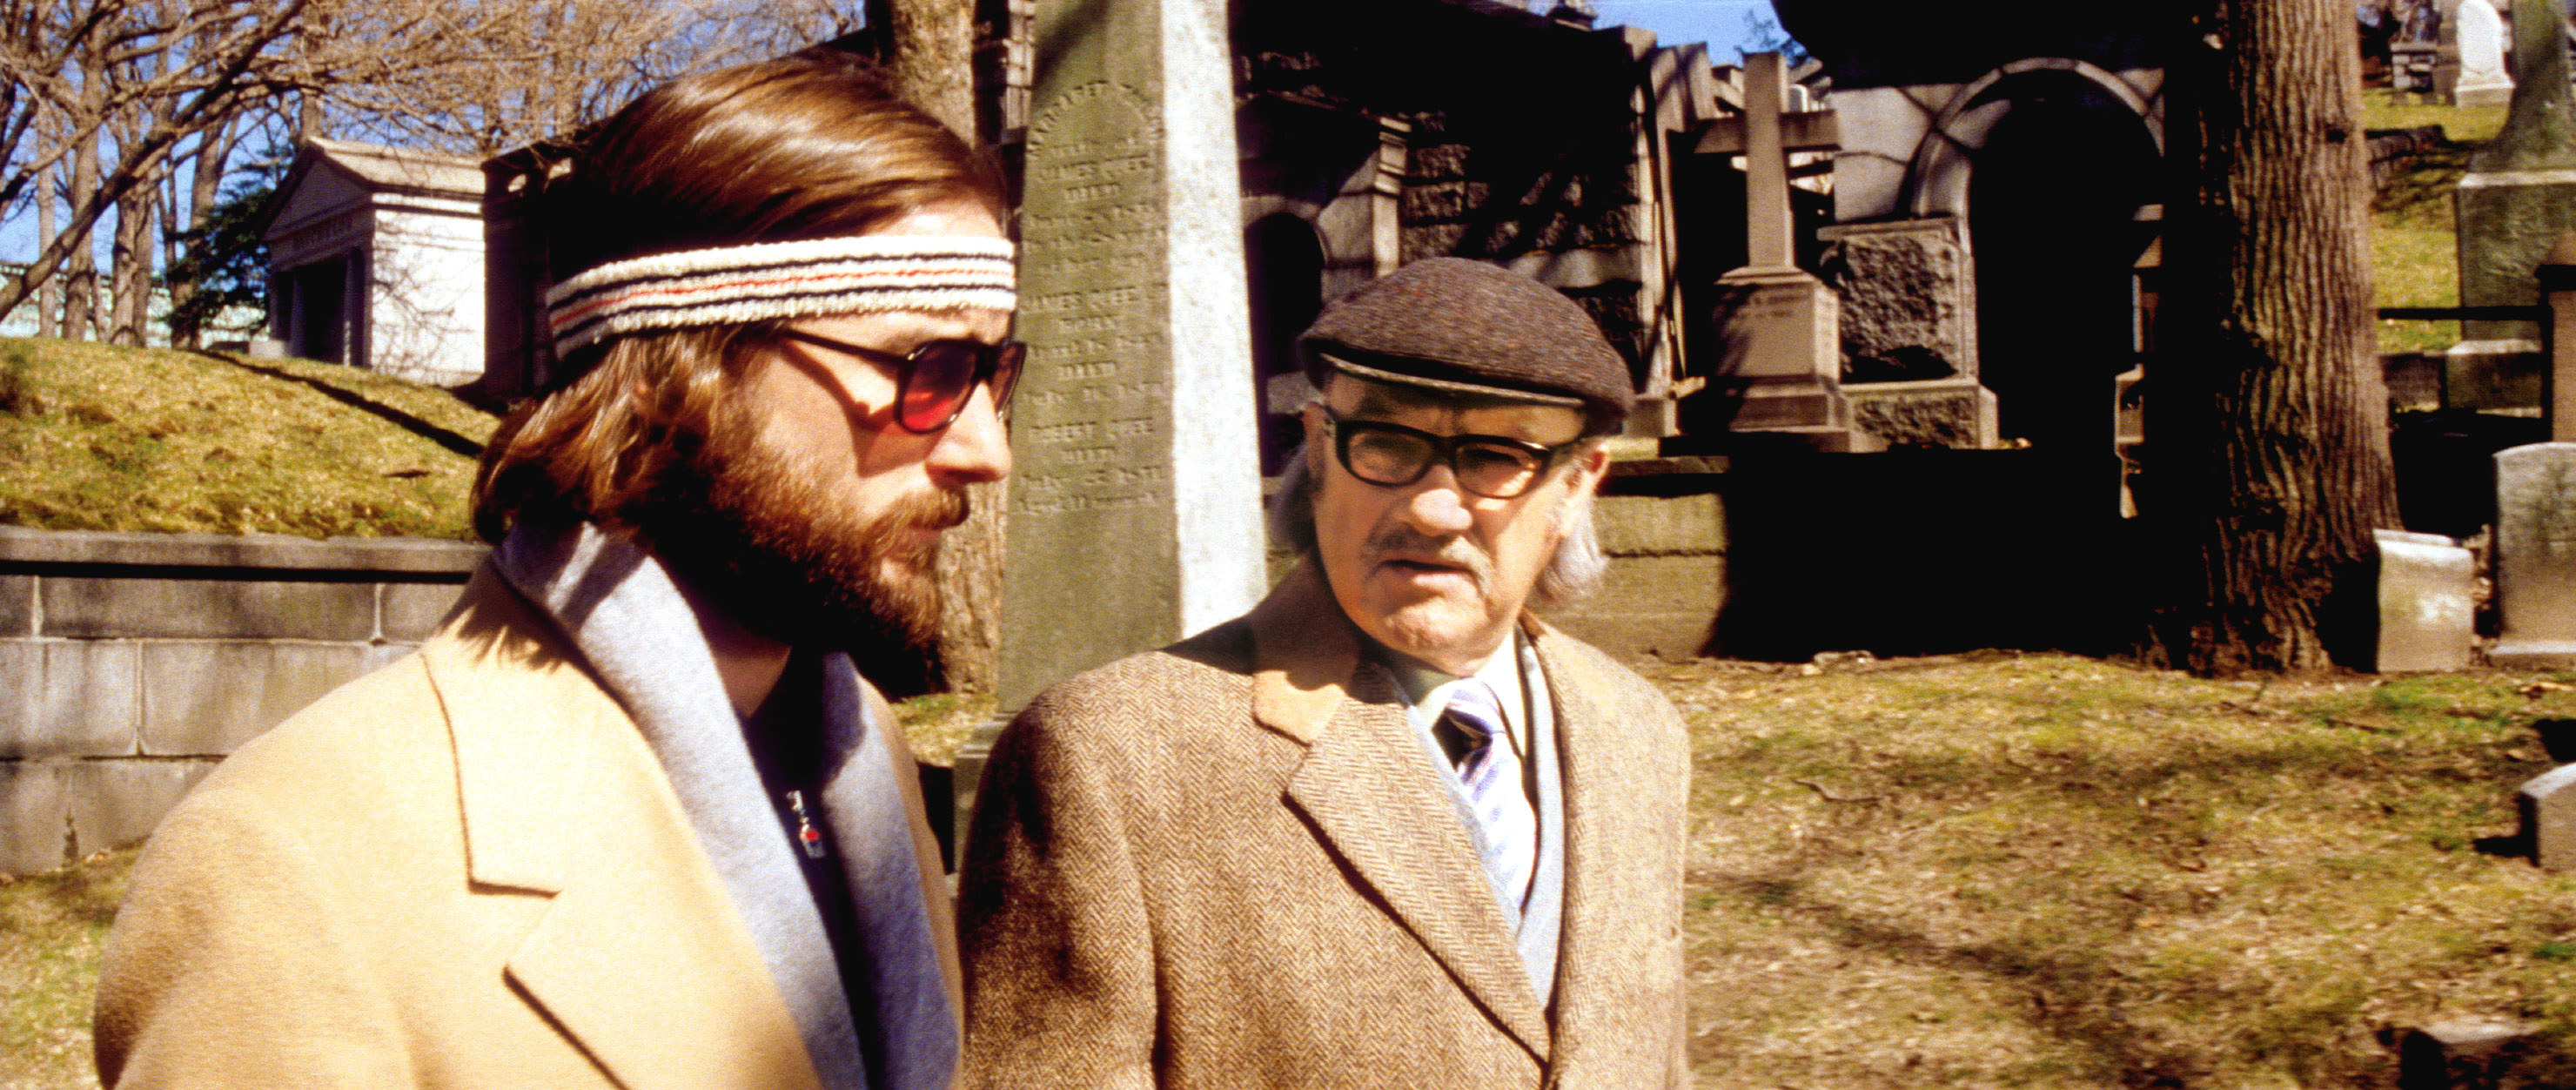 Luke Wilson and Gene Hackman walking in a cemetery.